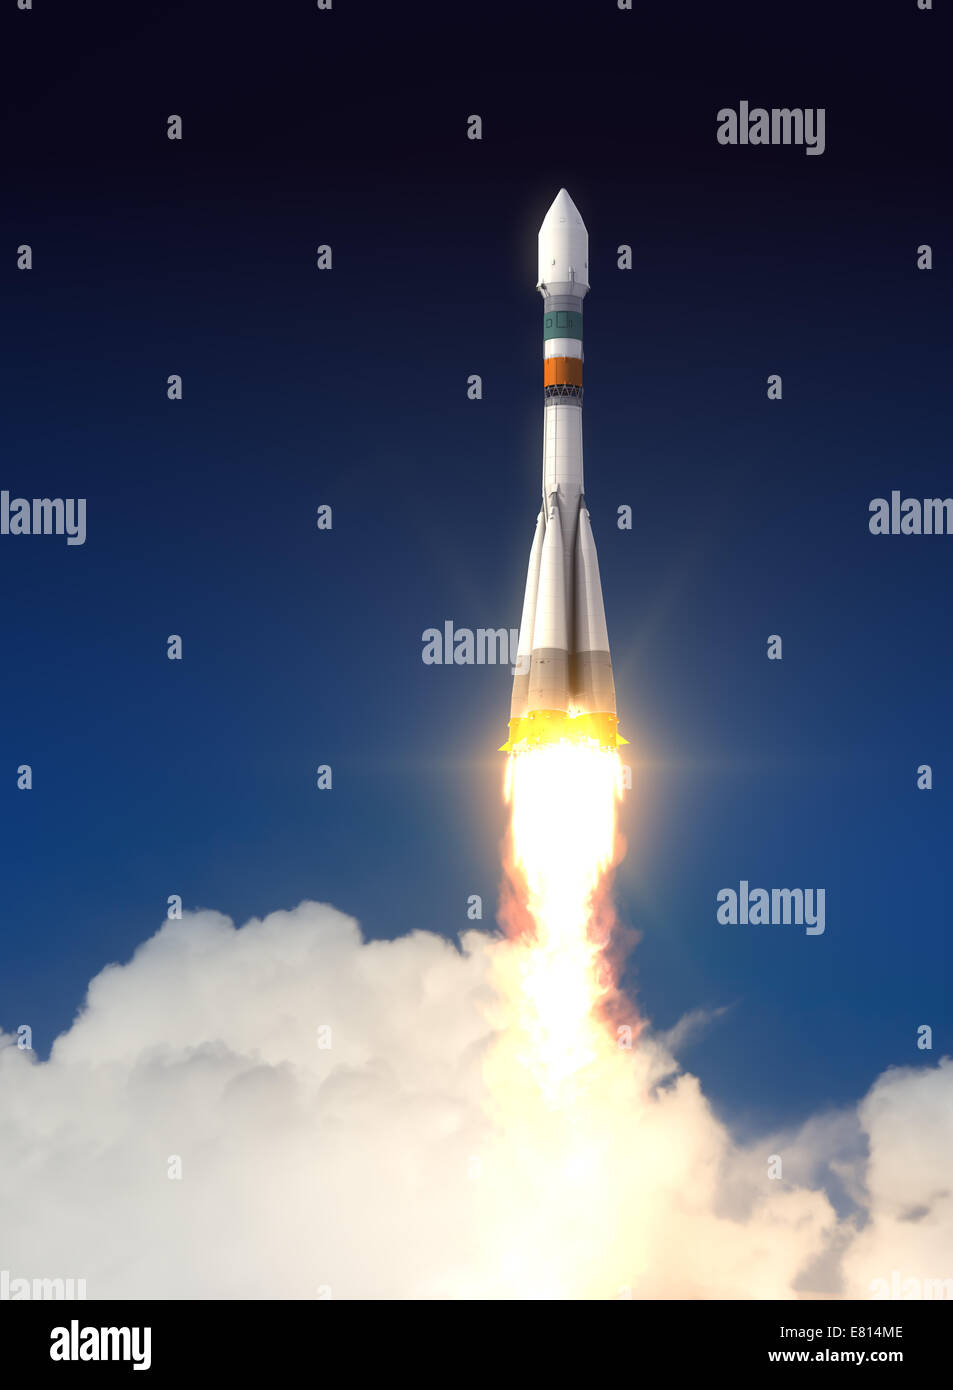 Träger-Rakete Sojus-Fregat nimmt ab. 3D Szene. Stockfoto